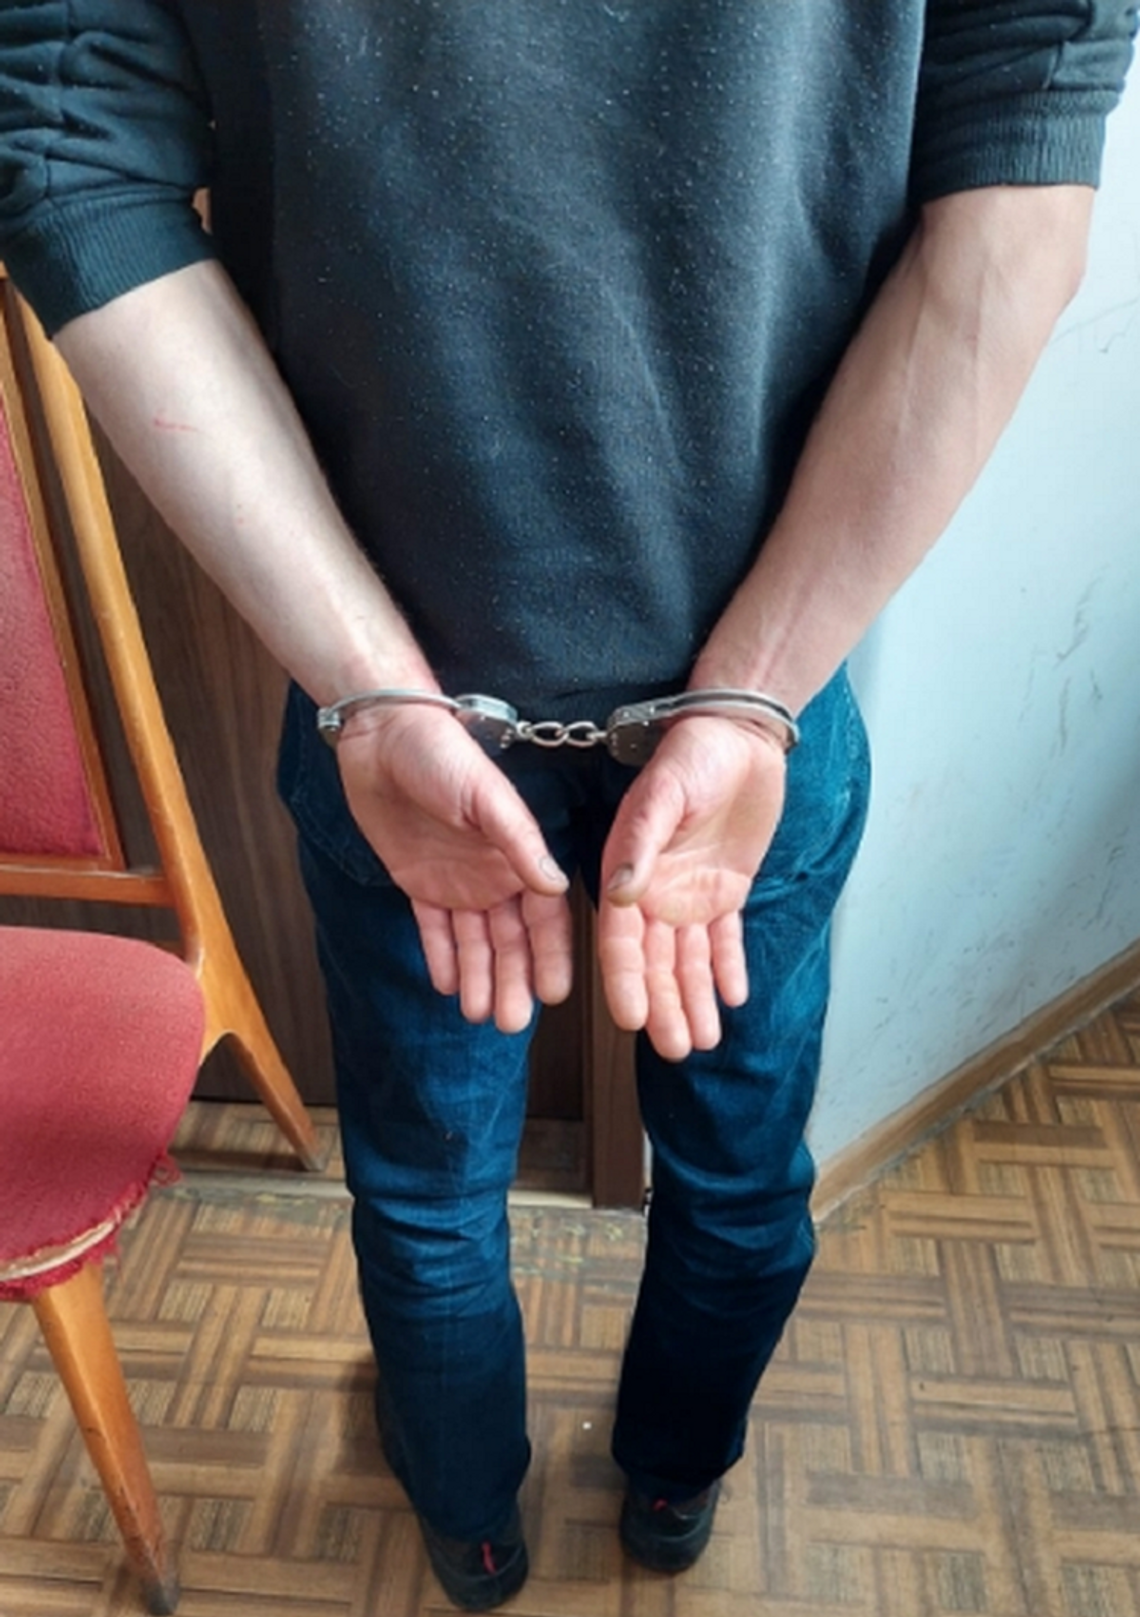 20-letni kierowca pod wpływem narkotyków zatrzymany przez malborskich policjantów.